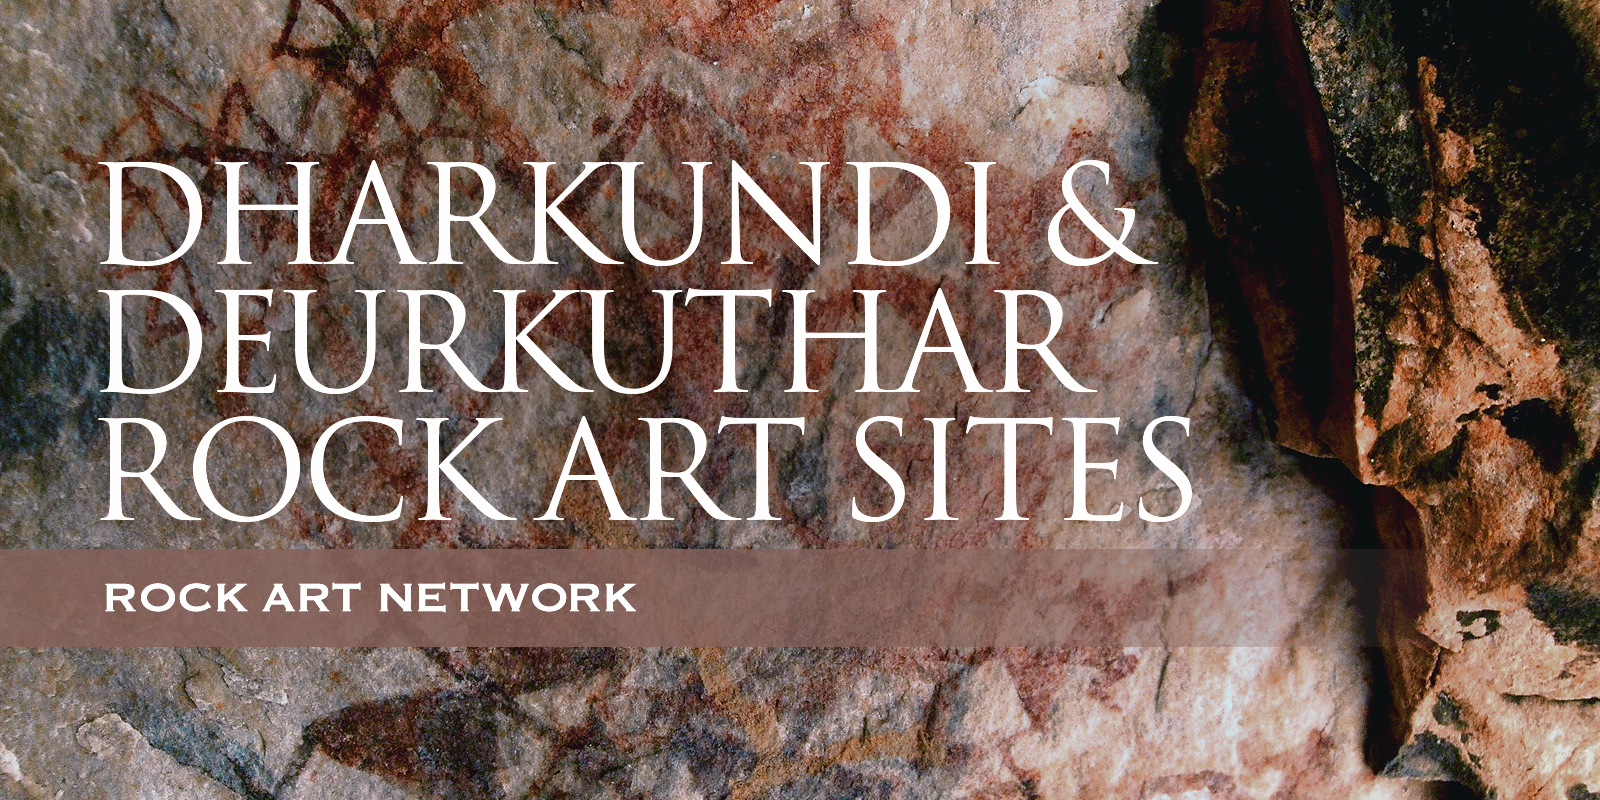 Rock Art Network Meenakshi Dubey-Pathak